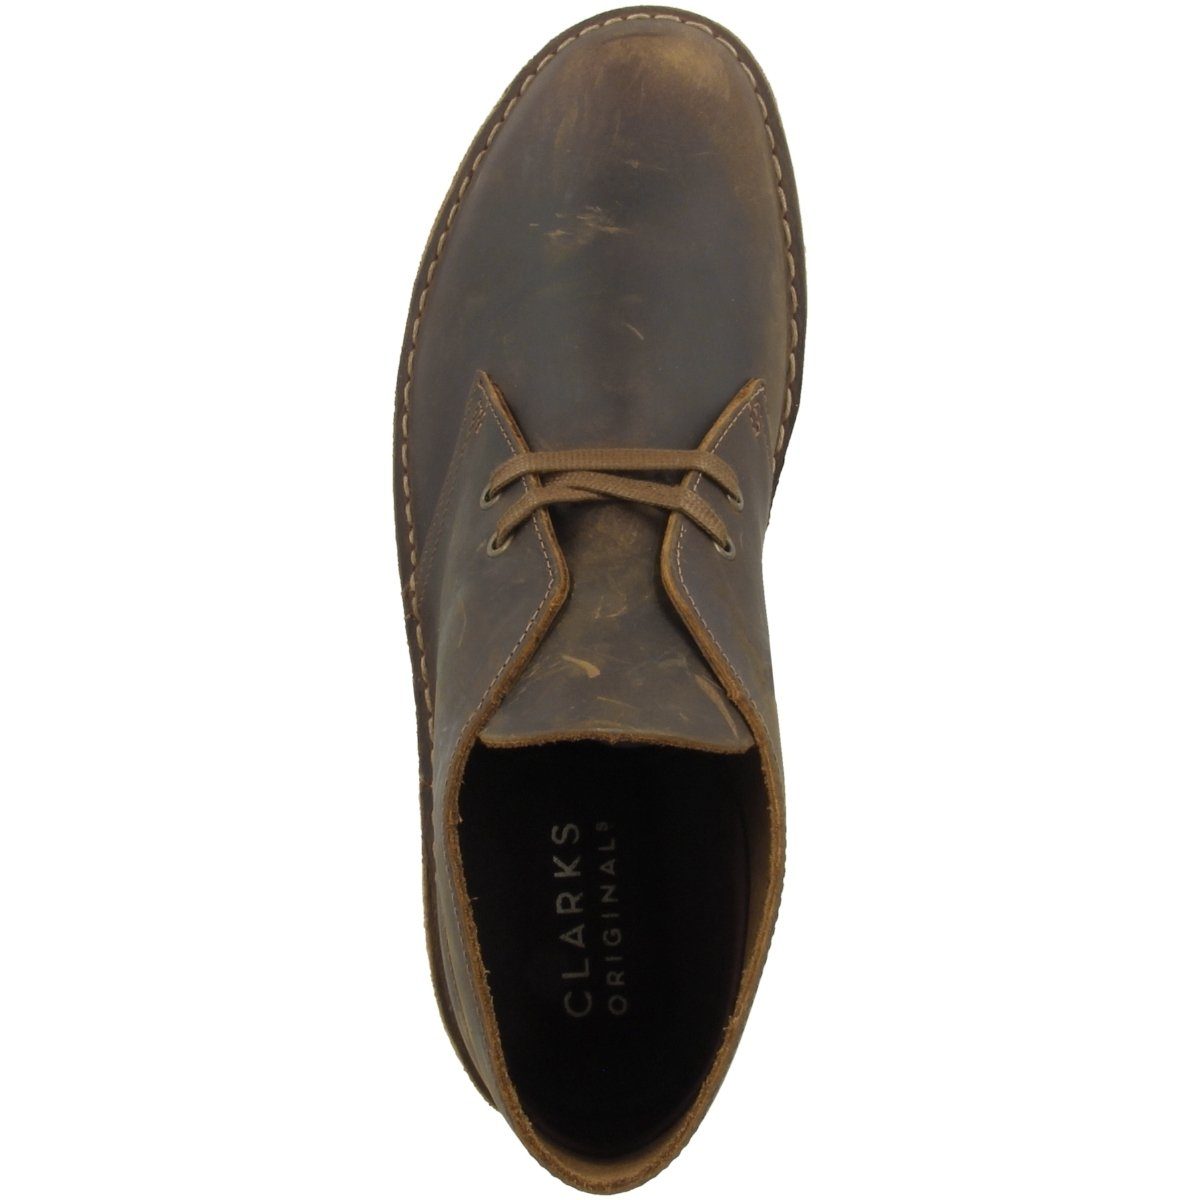 Schuhe Schnürstiefeletten Clarks Originals Desert Boot Herren Stiefelette